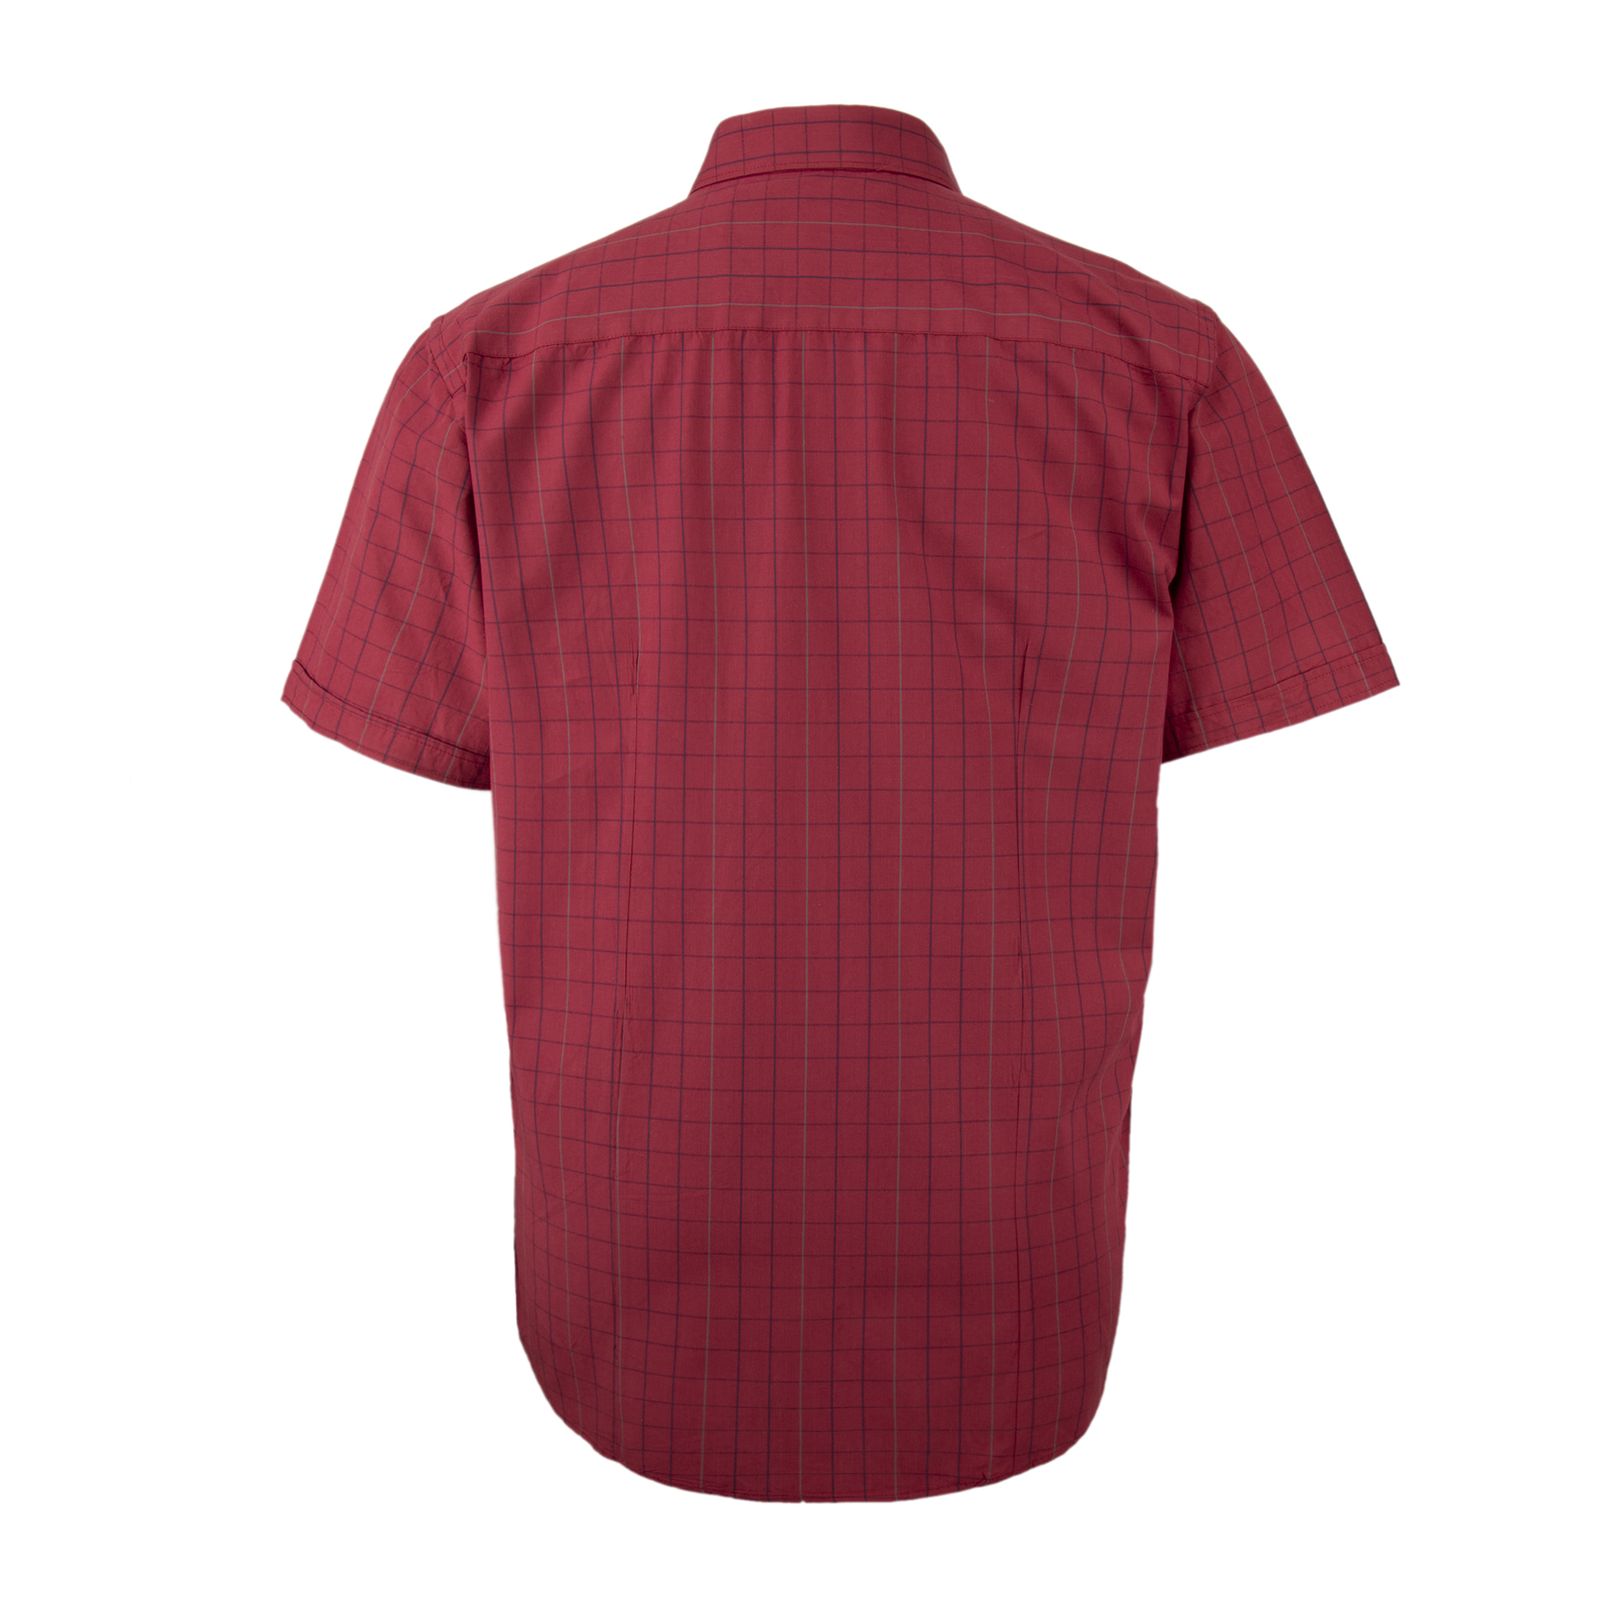 پیراهن آستین کوتاه مردانه الفردو مدل اسپرت چهارخانه 2 کد 222033 -  - 3